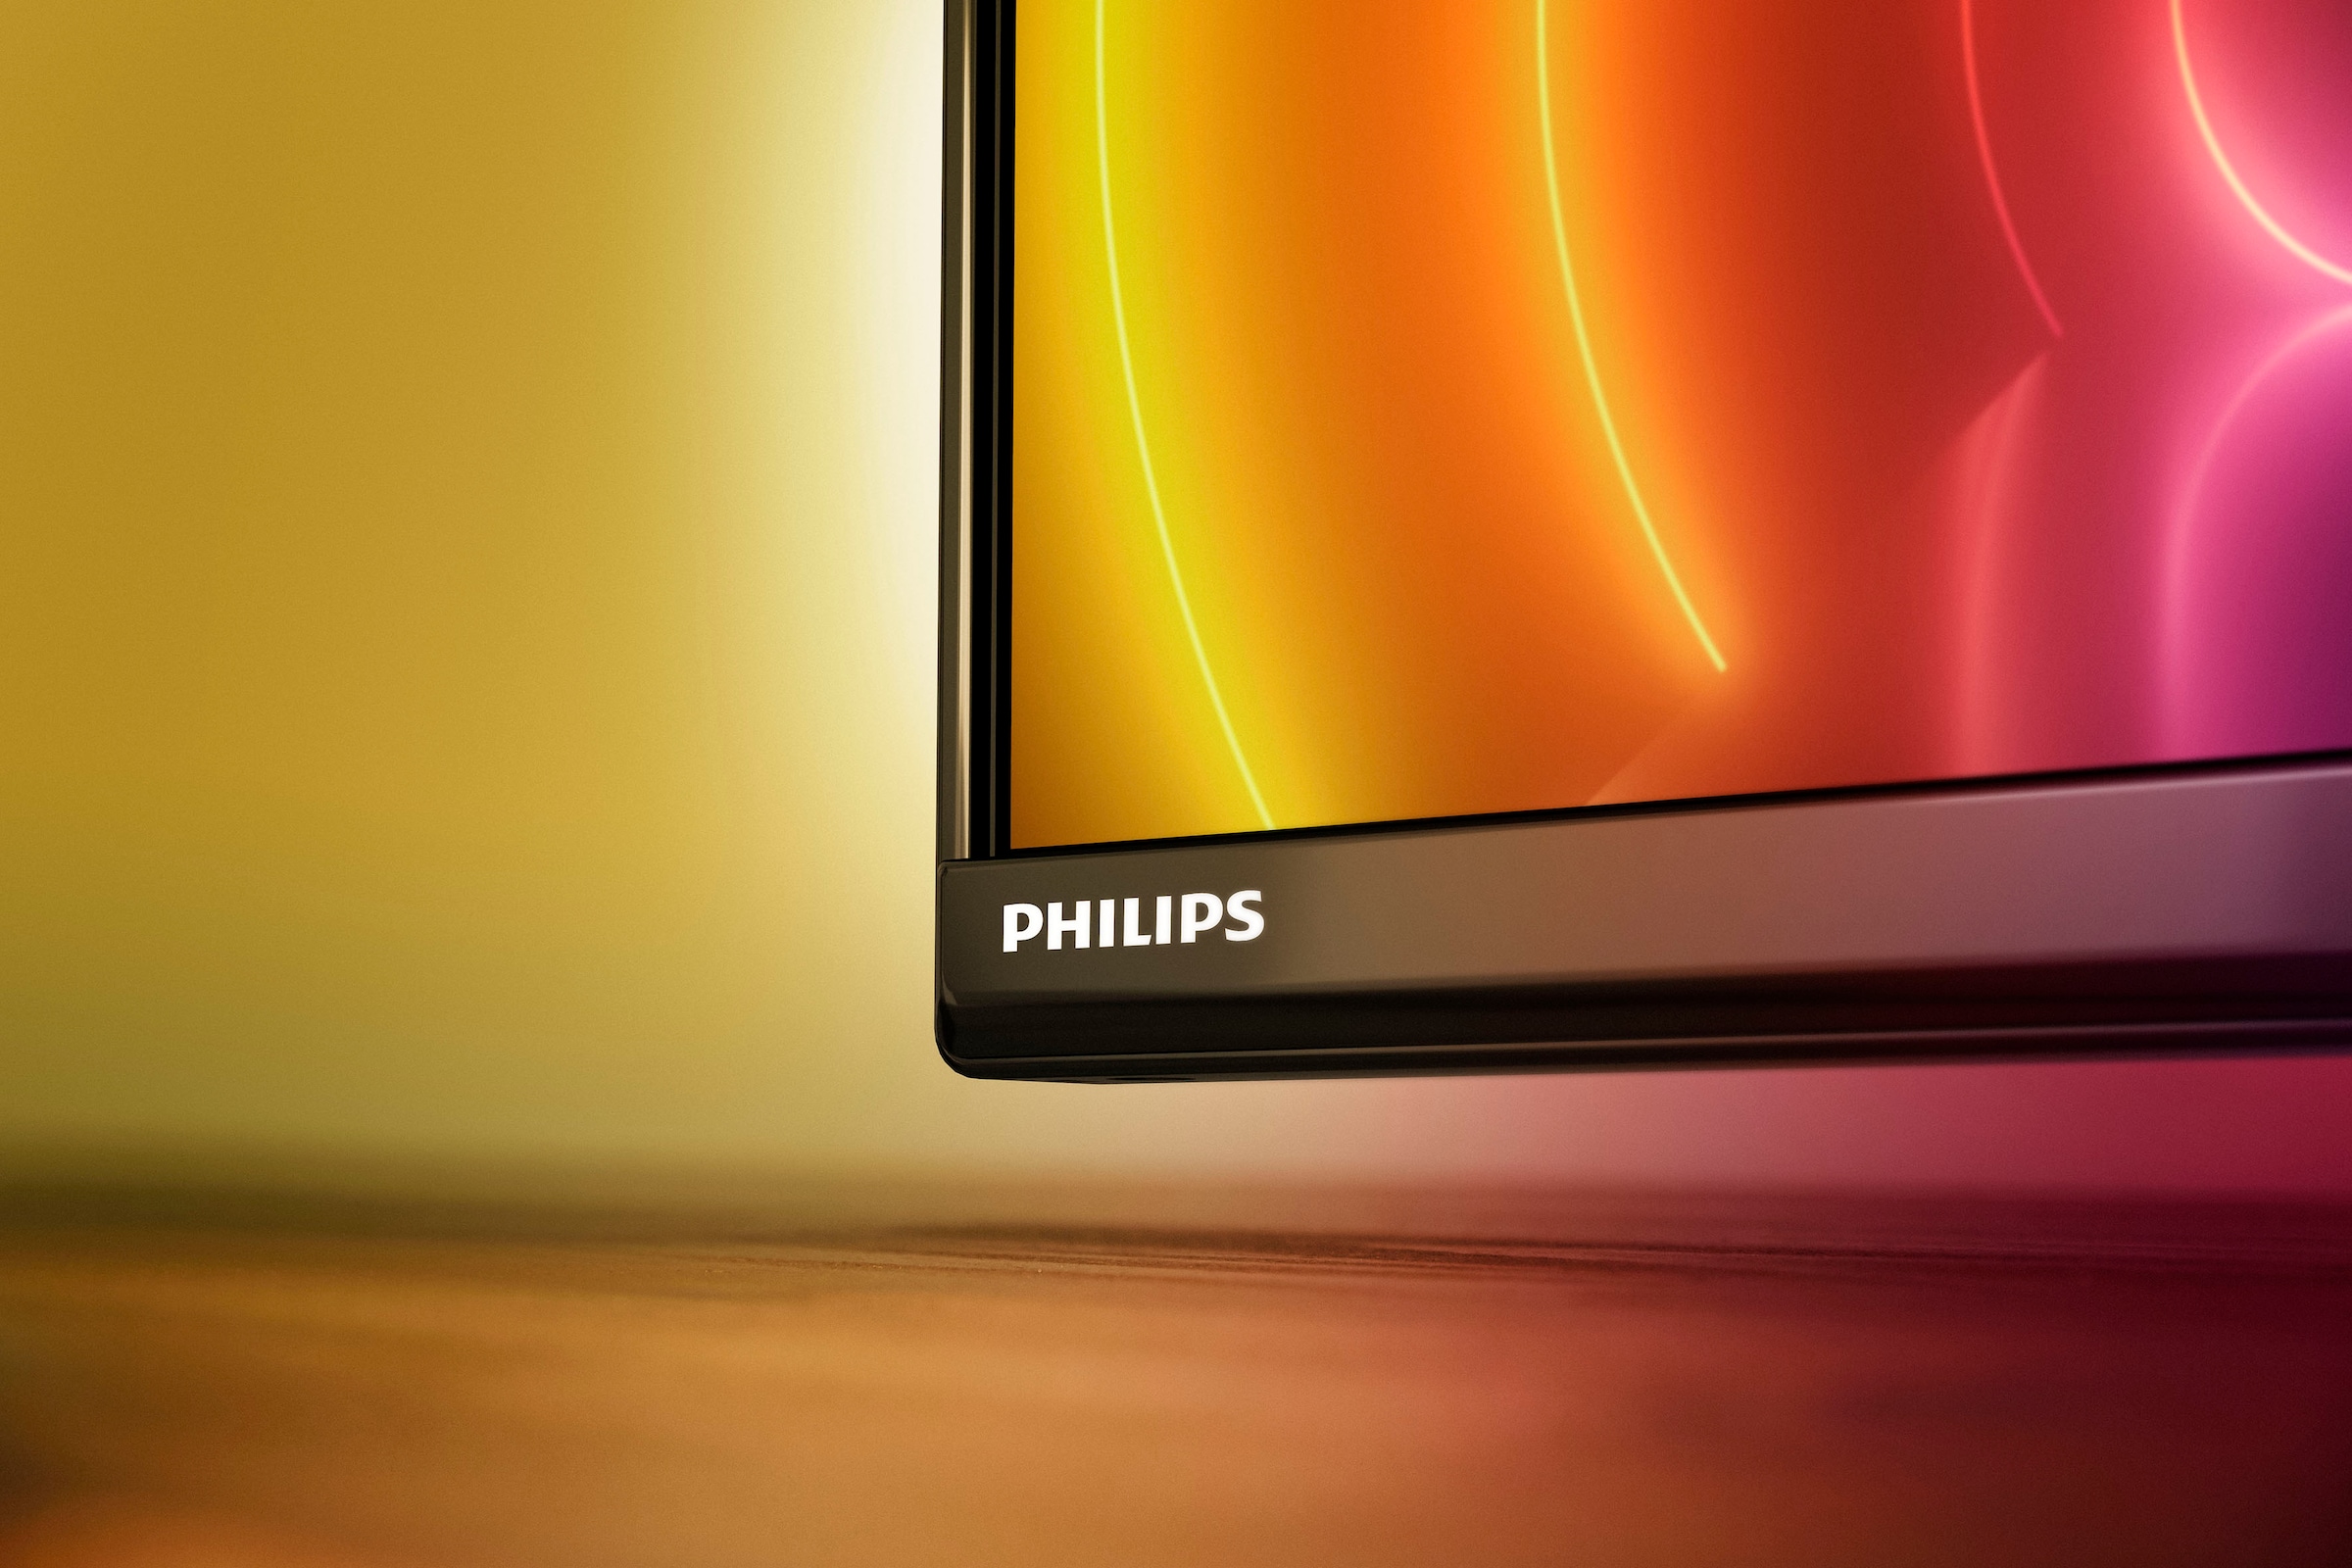 ♕ Philips LED-Fernseher »43PUS8106/12«, 108 cm/43 Zoll, 4K Ultra HD,  Android TV-Smart-TV, 3-seitiges Ambilght versandkostenfrei auf